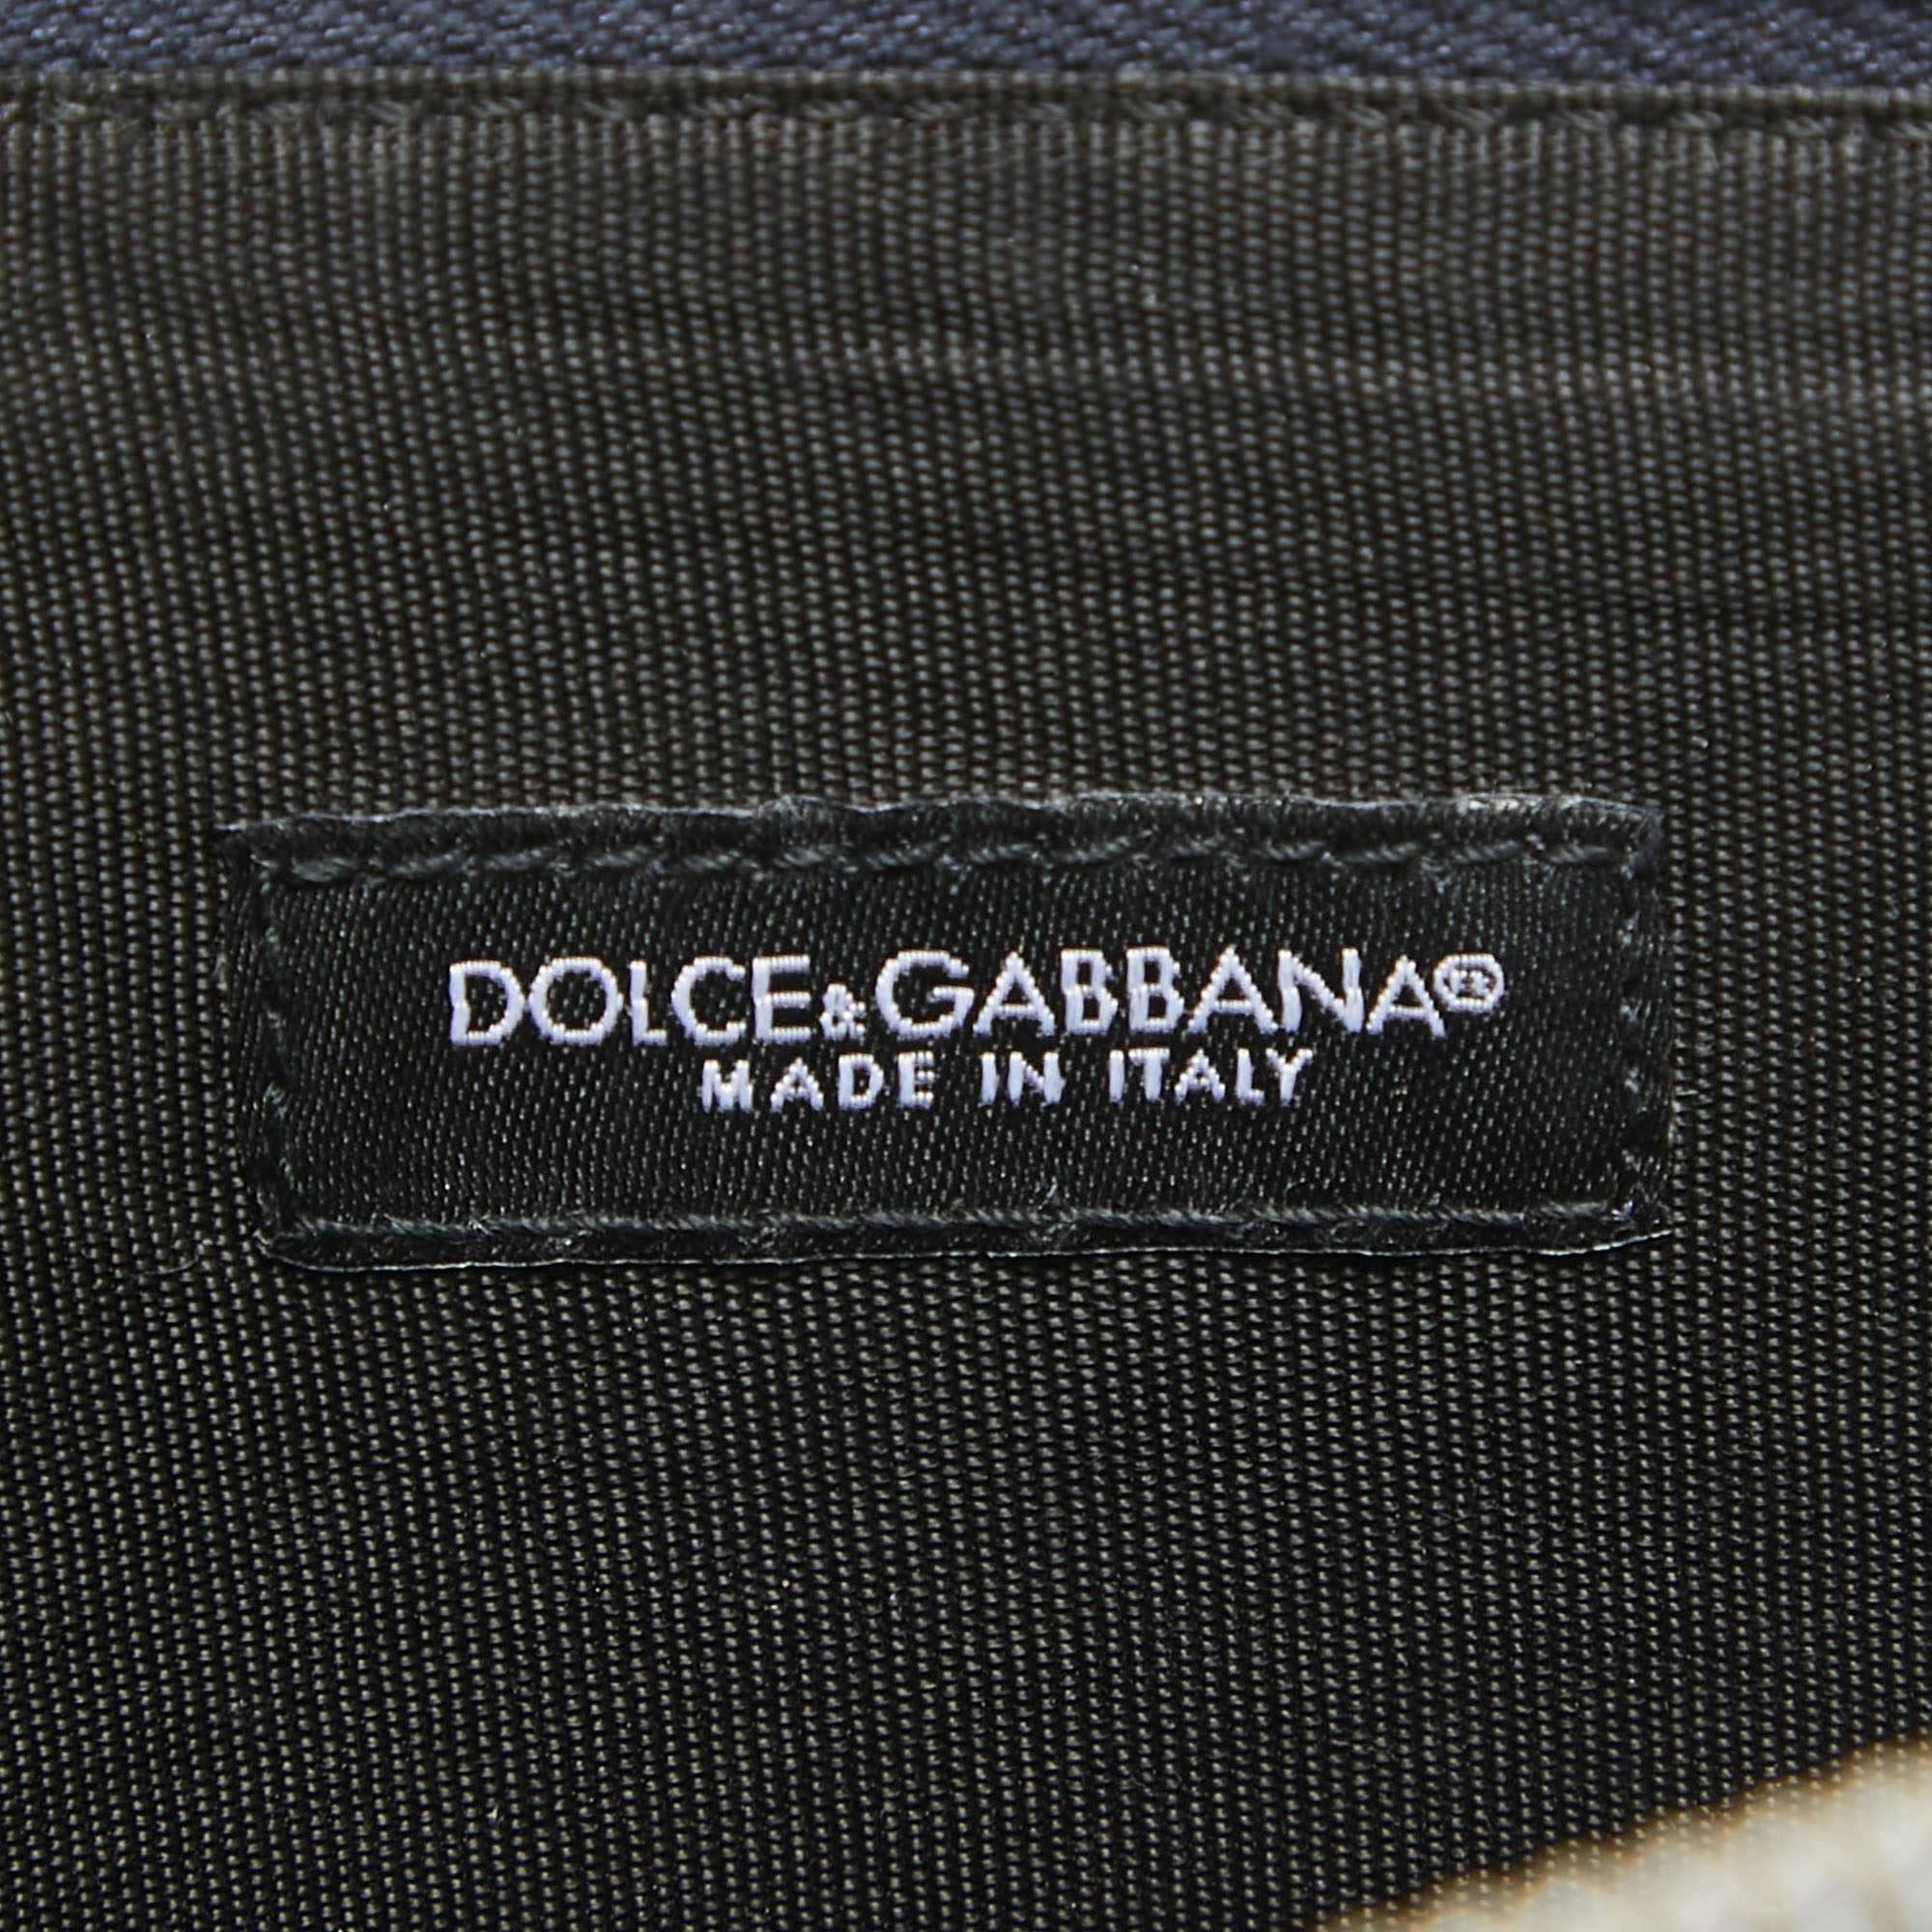 Dolce & Gabbana Multicolor Leather Colorblock Clutch